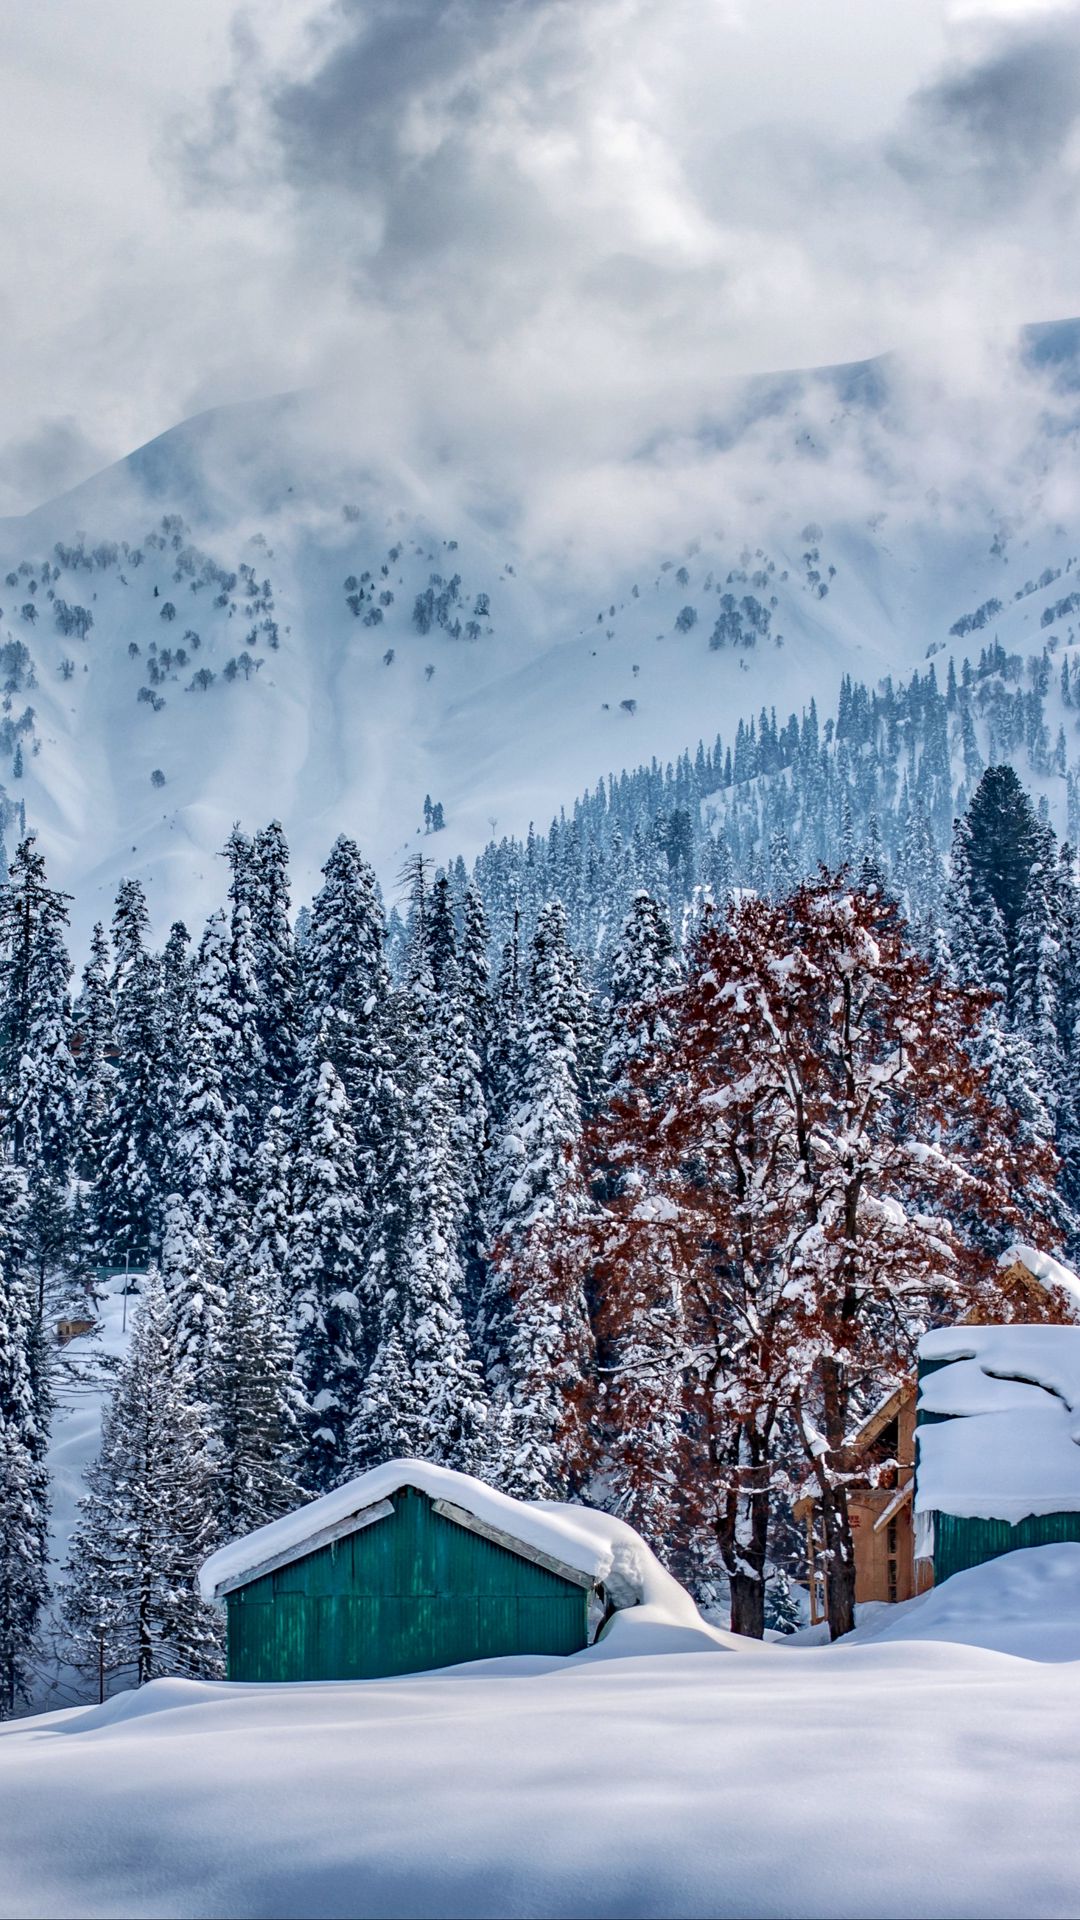 Himalaya, dãy núi hùng vĩ nổi tiếng toàn cầu, nằm trên địa bàn Kashmir. Những ngọn núi cao ngất trời, cùng những cảnh quan kỳ vỹ xung quanh tạo nên một bức tranh độc đáo và đẹp mê hồn mà không thể nào quên được. Đến với Kashmir, du khách sẽ được trải nghiệm khoảnh khắc đắm chìm giữa những ngọn núi mờ sương và không khí tươi mát của núi rừng Himalaya.